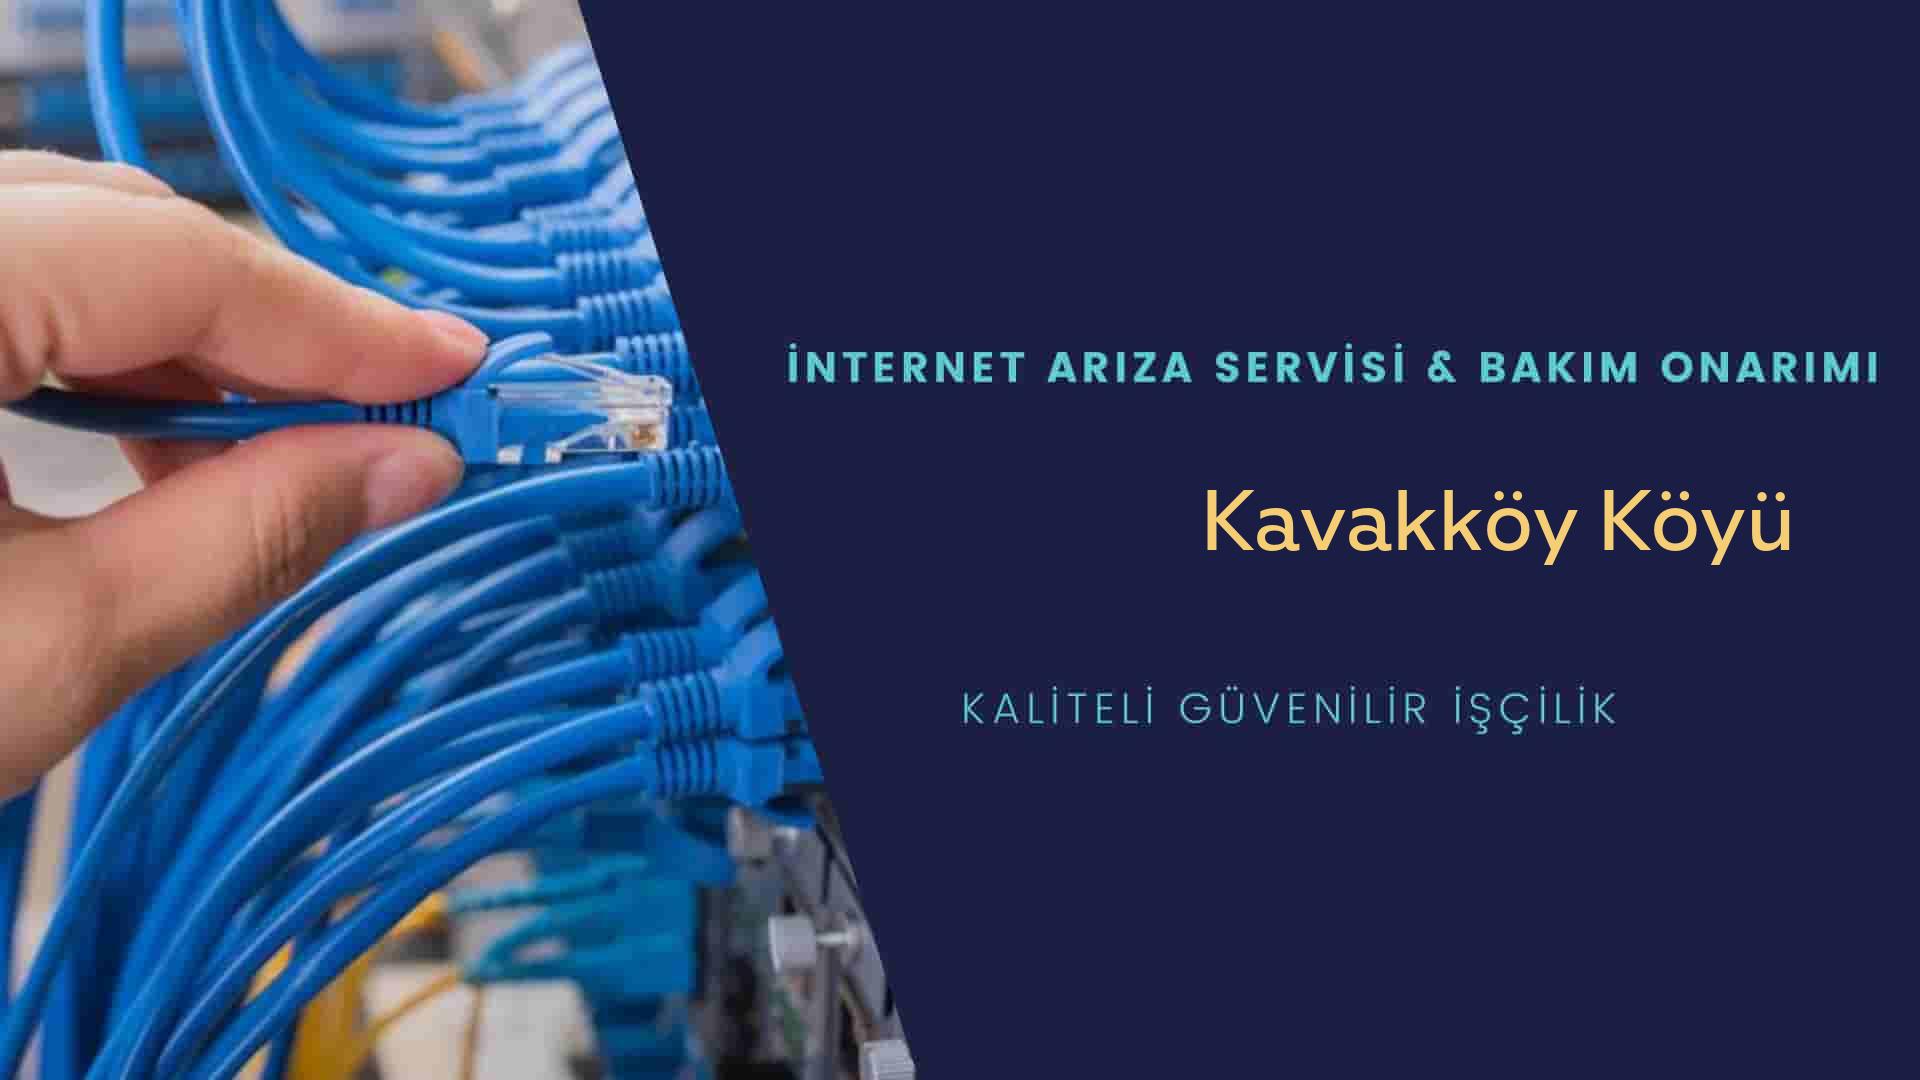 Kavakköy Köyü internet kablosu çekimi yapan yerler veya elektrikçiler mi? arıyorsunuz doğru yerdesiniz o zaman sizlere 7/24 yardımcı olacak profesyonel ustalarımız bir telefon kadar yakındır size.